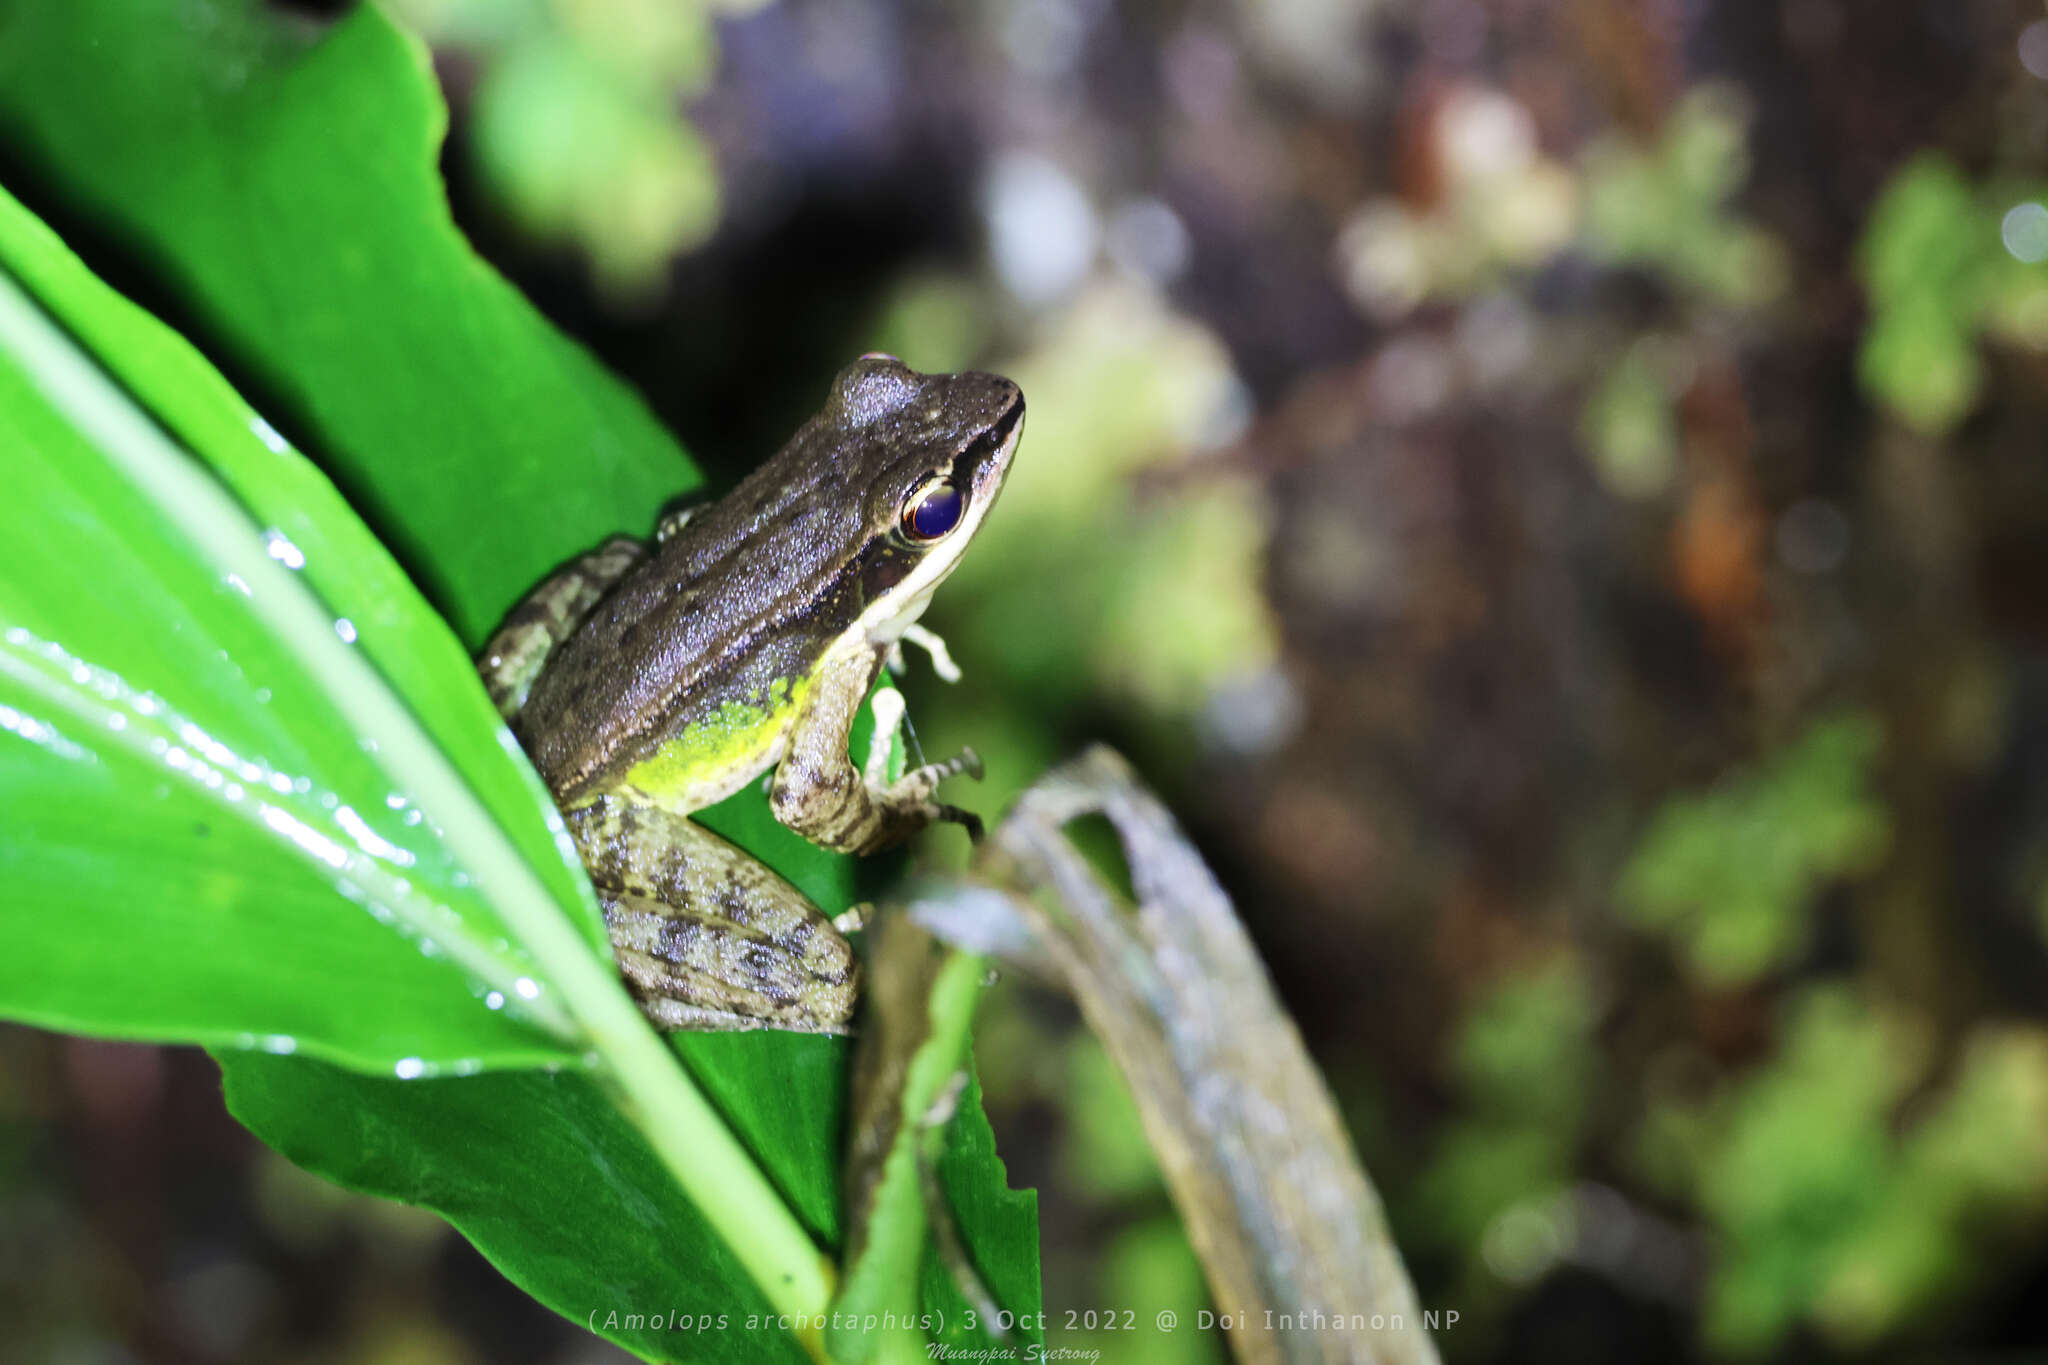 Image of Doi Inthanon Rock Frog